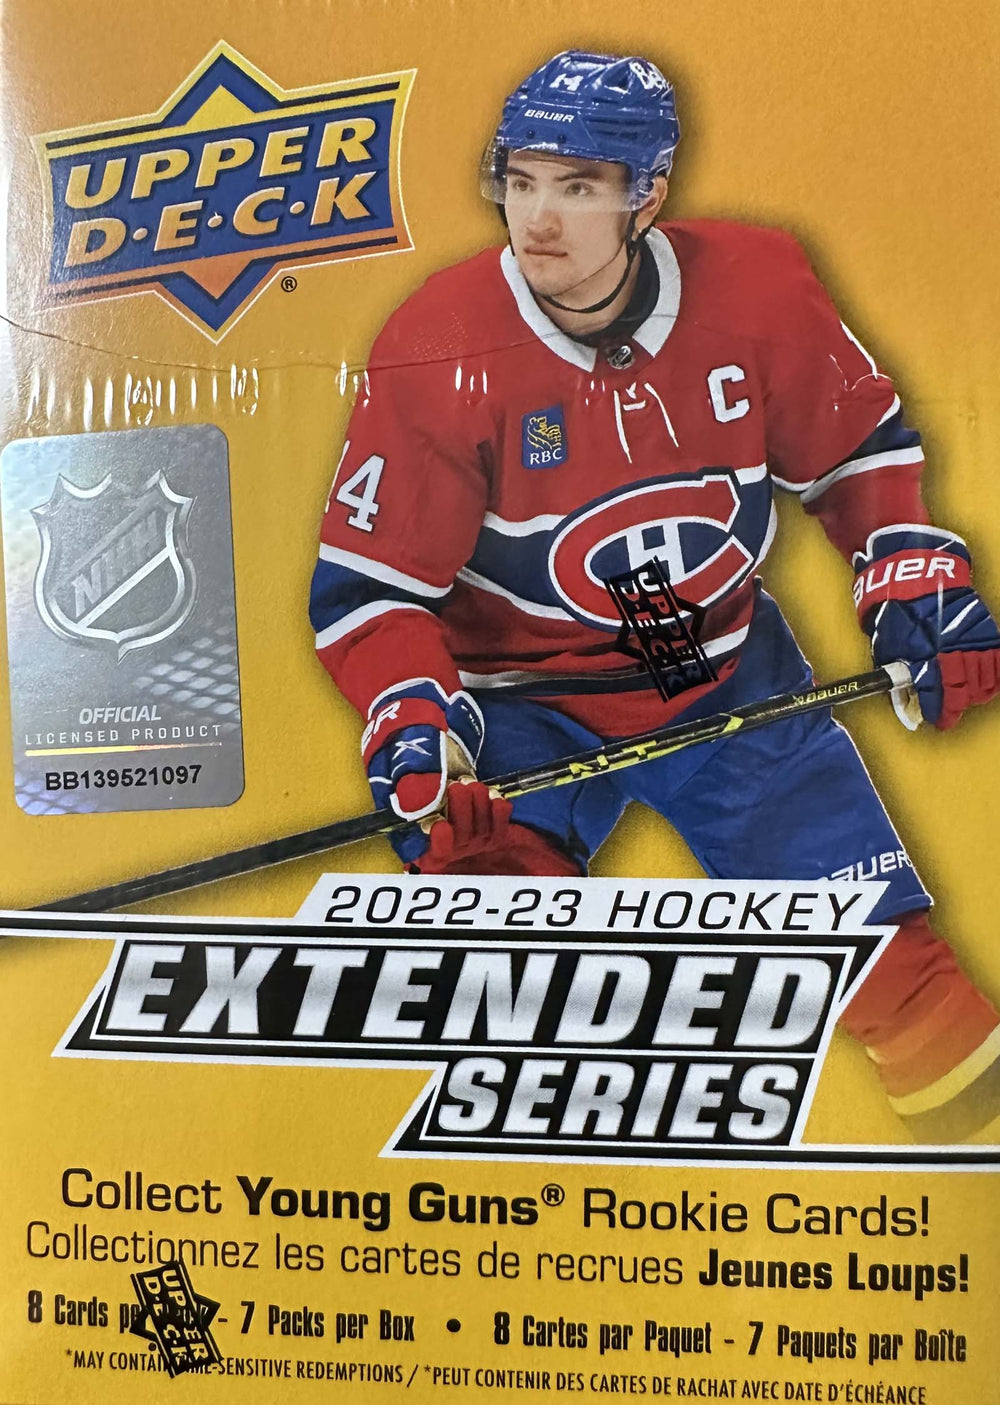 2022 2023 Upper Deck Hockey EXTENDED Series Blaster Box of Packs